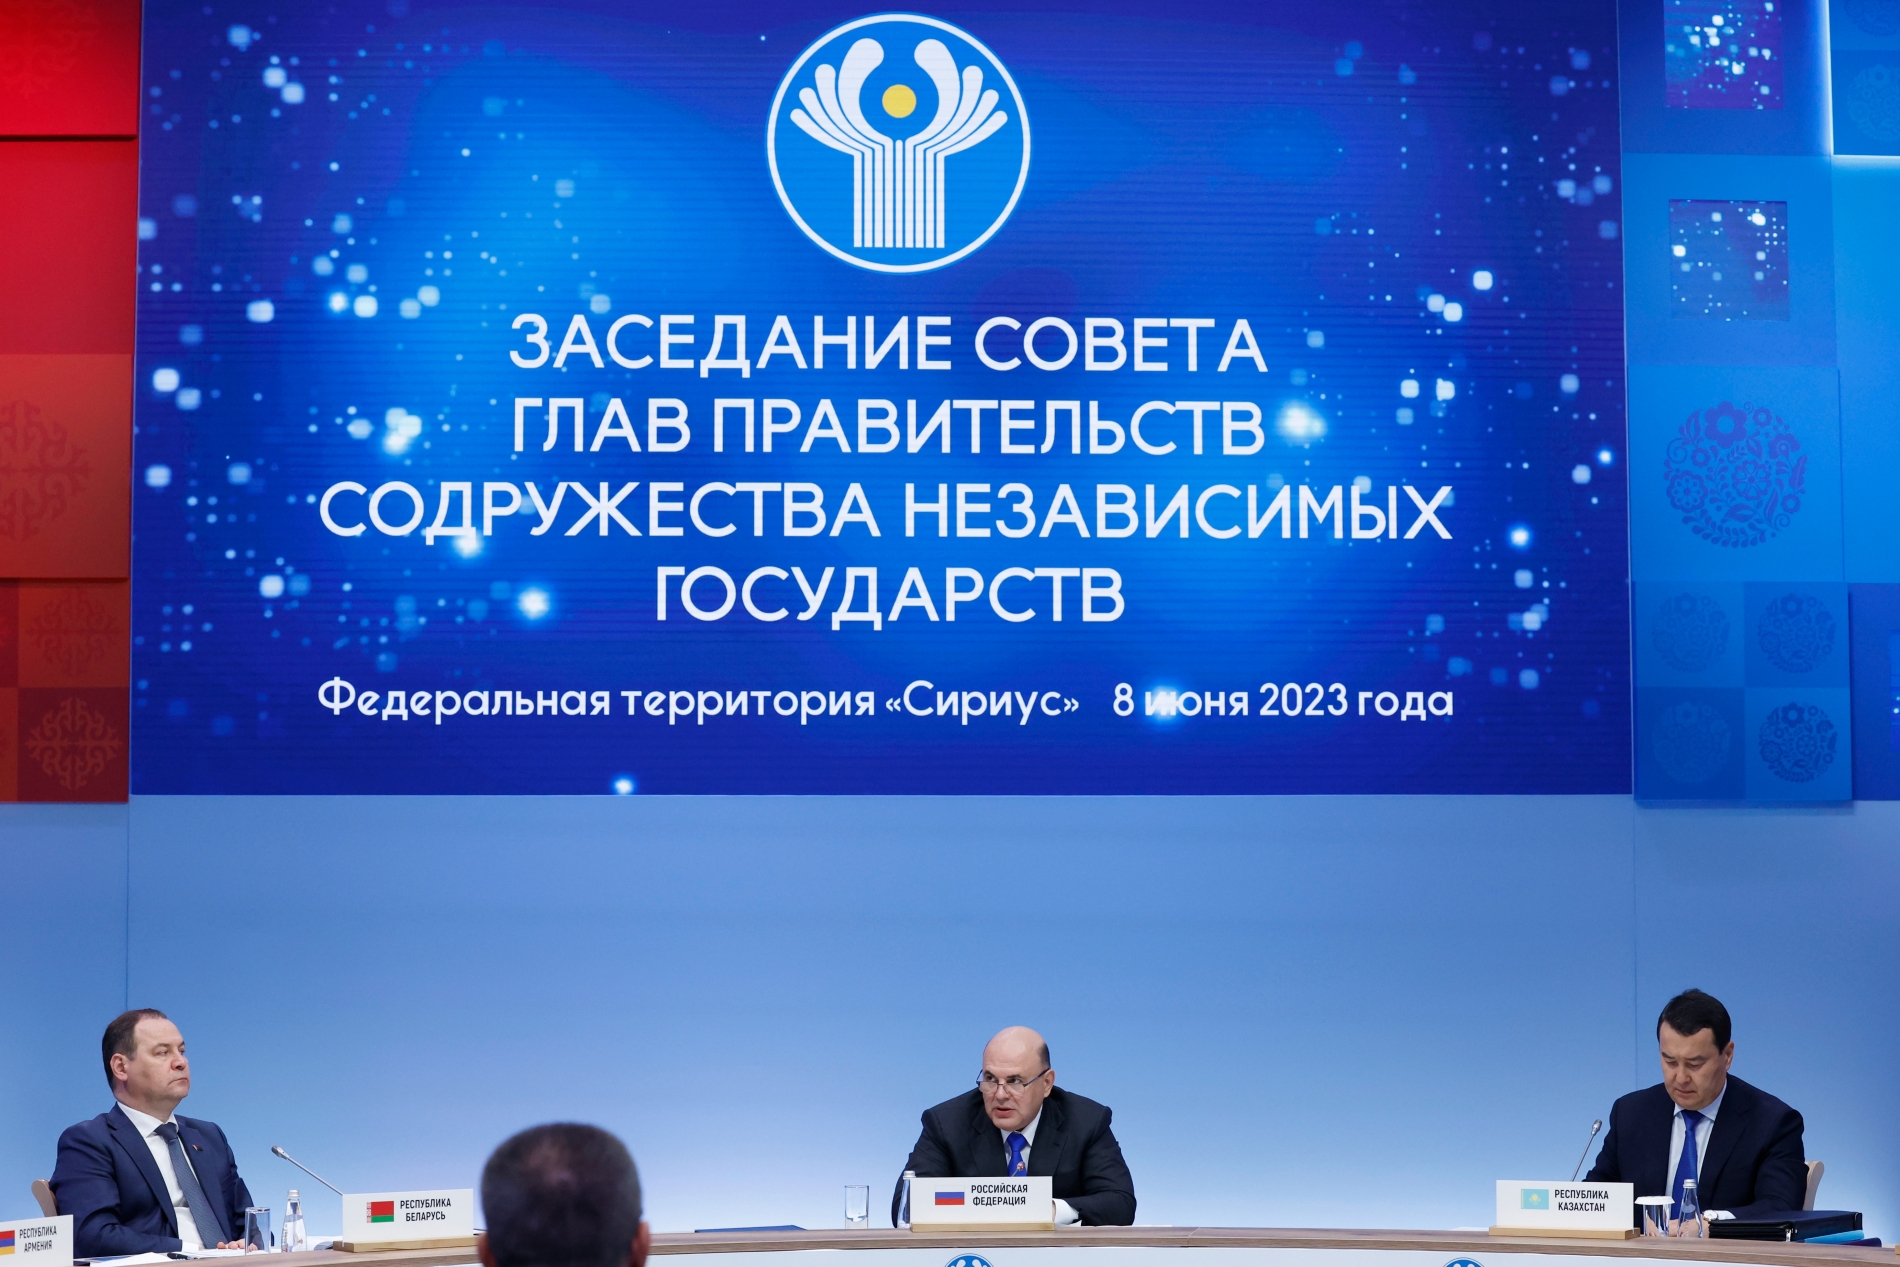 Михаил Мишустин: новая стратегия развития ЕАЭС должна учитывать сегодняшние вызовы